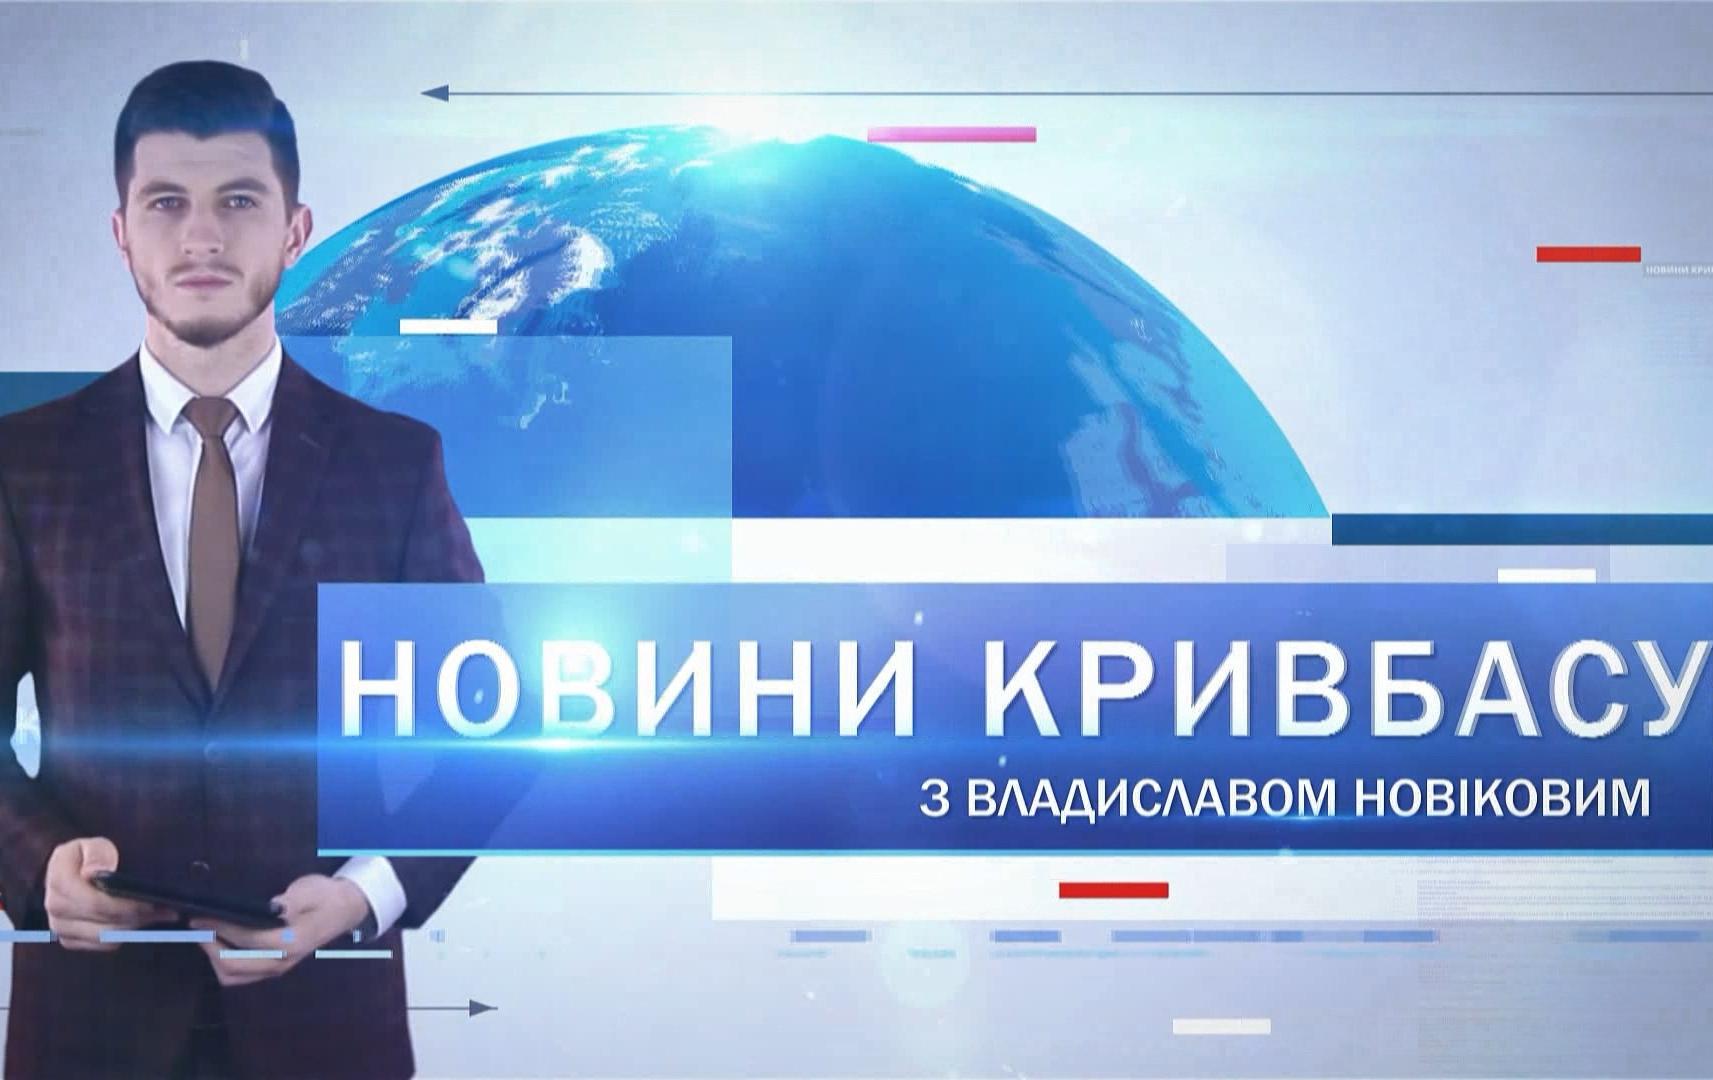 Новини Кривбасу 27 травня 2020: апарати ШВЛ, пограбування, звернення міськради до МОЗу